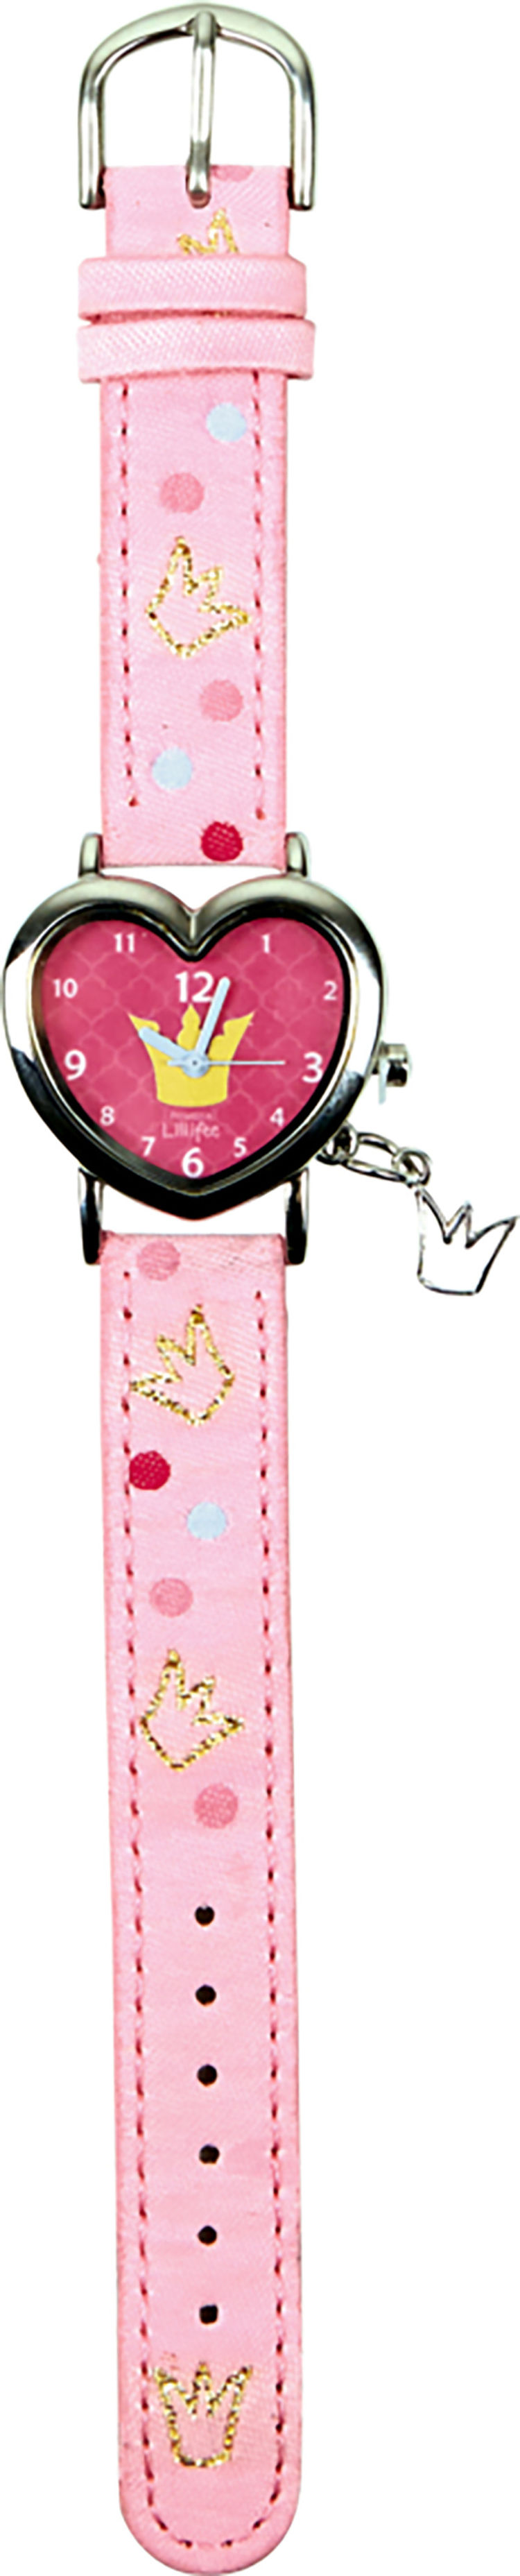 Spiegelburg Armbanduhr Prinzessin Lillifee, rosa | Weltbild.de